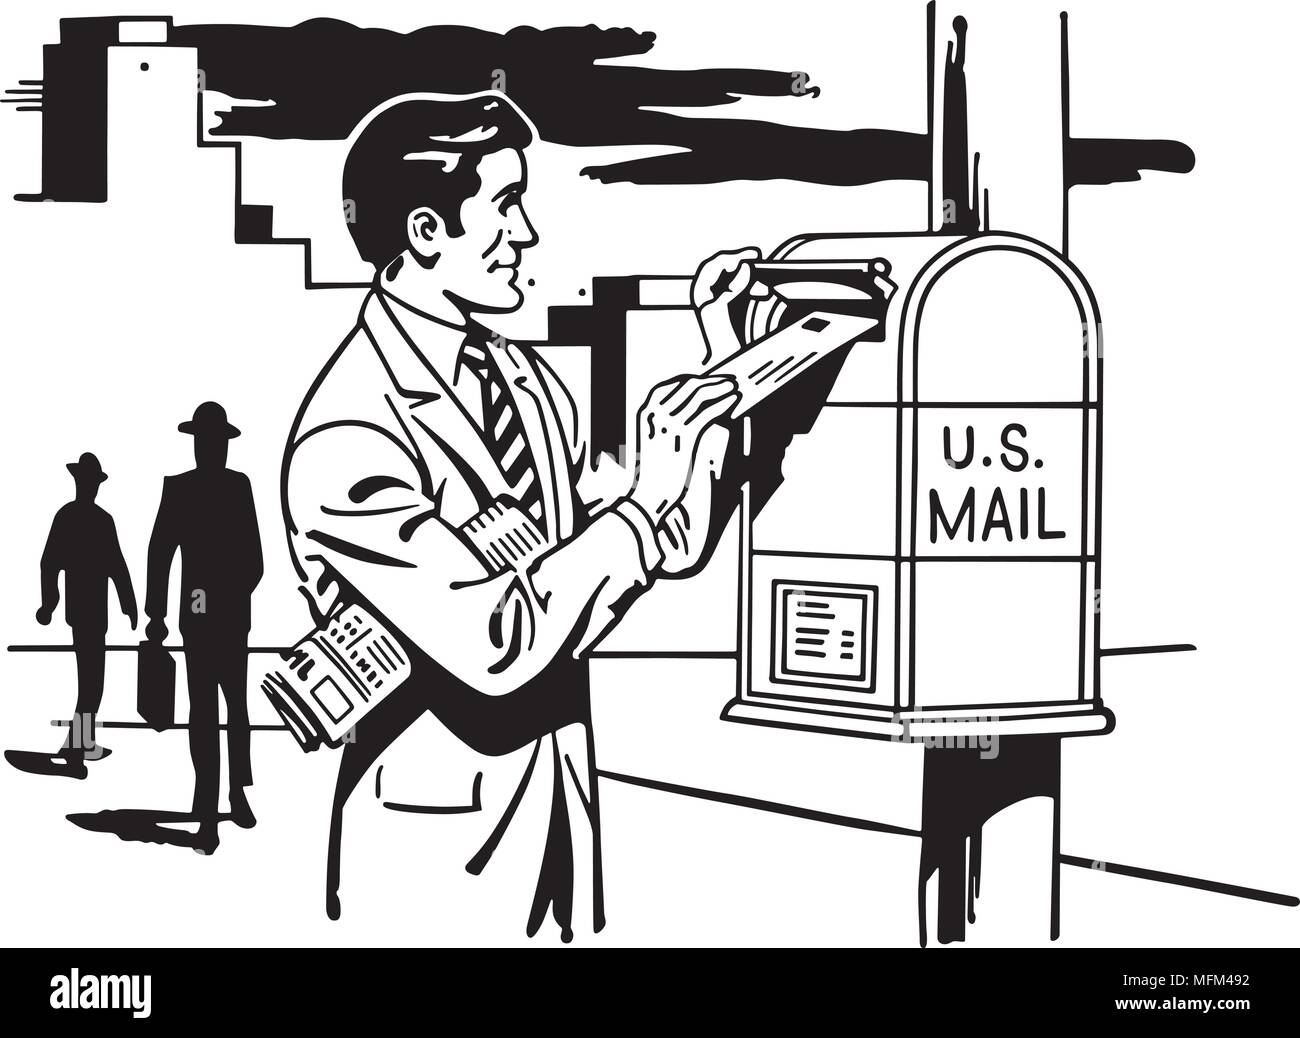 Mann Mailing einen Brief - Retro Clipart Illustration Stock Vektor